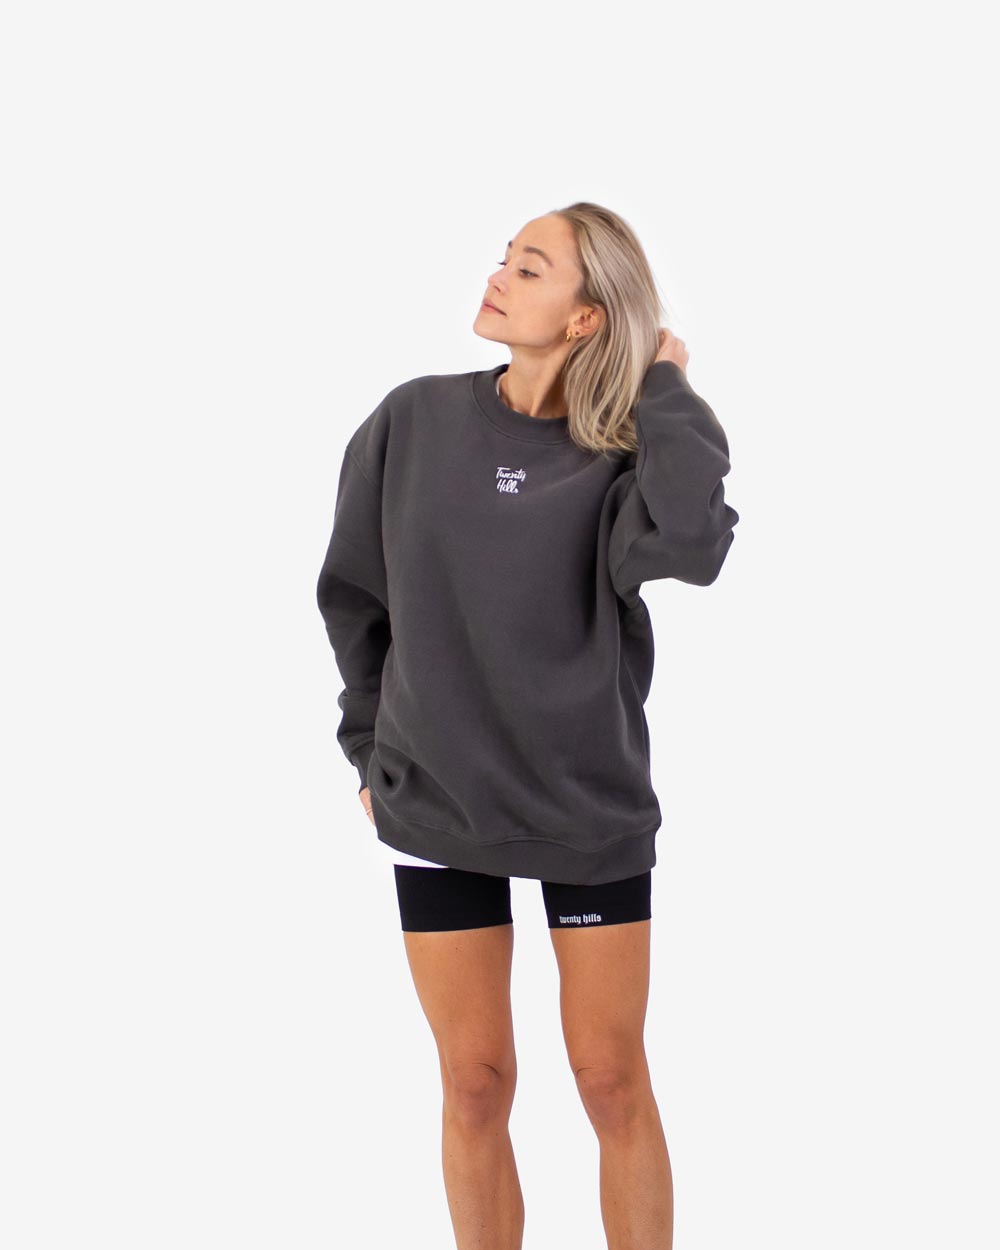 Unisex Sweatshirt (Gray)